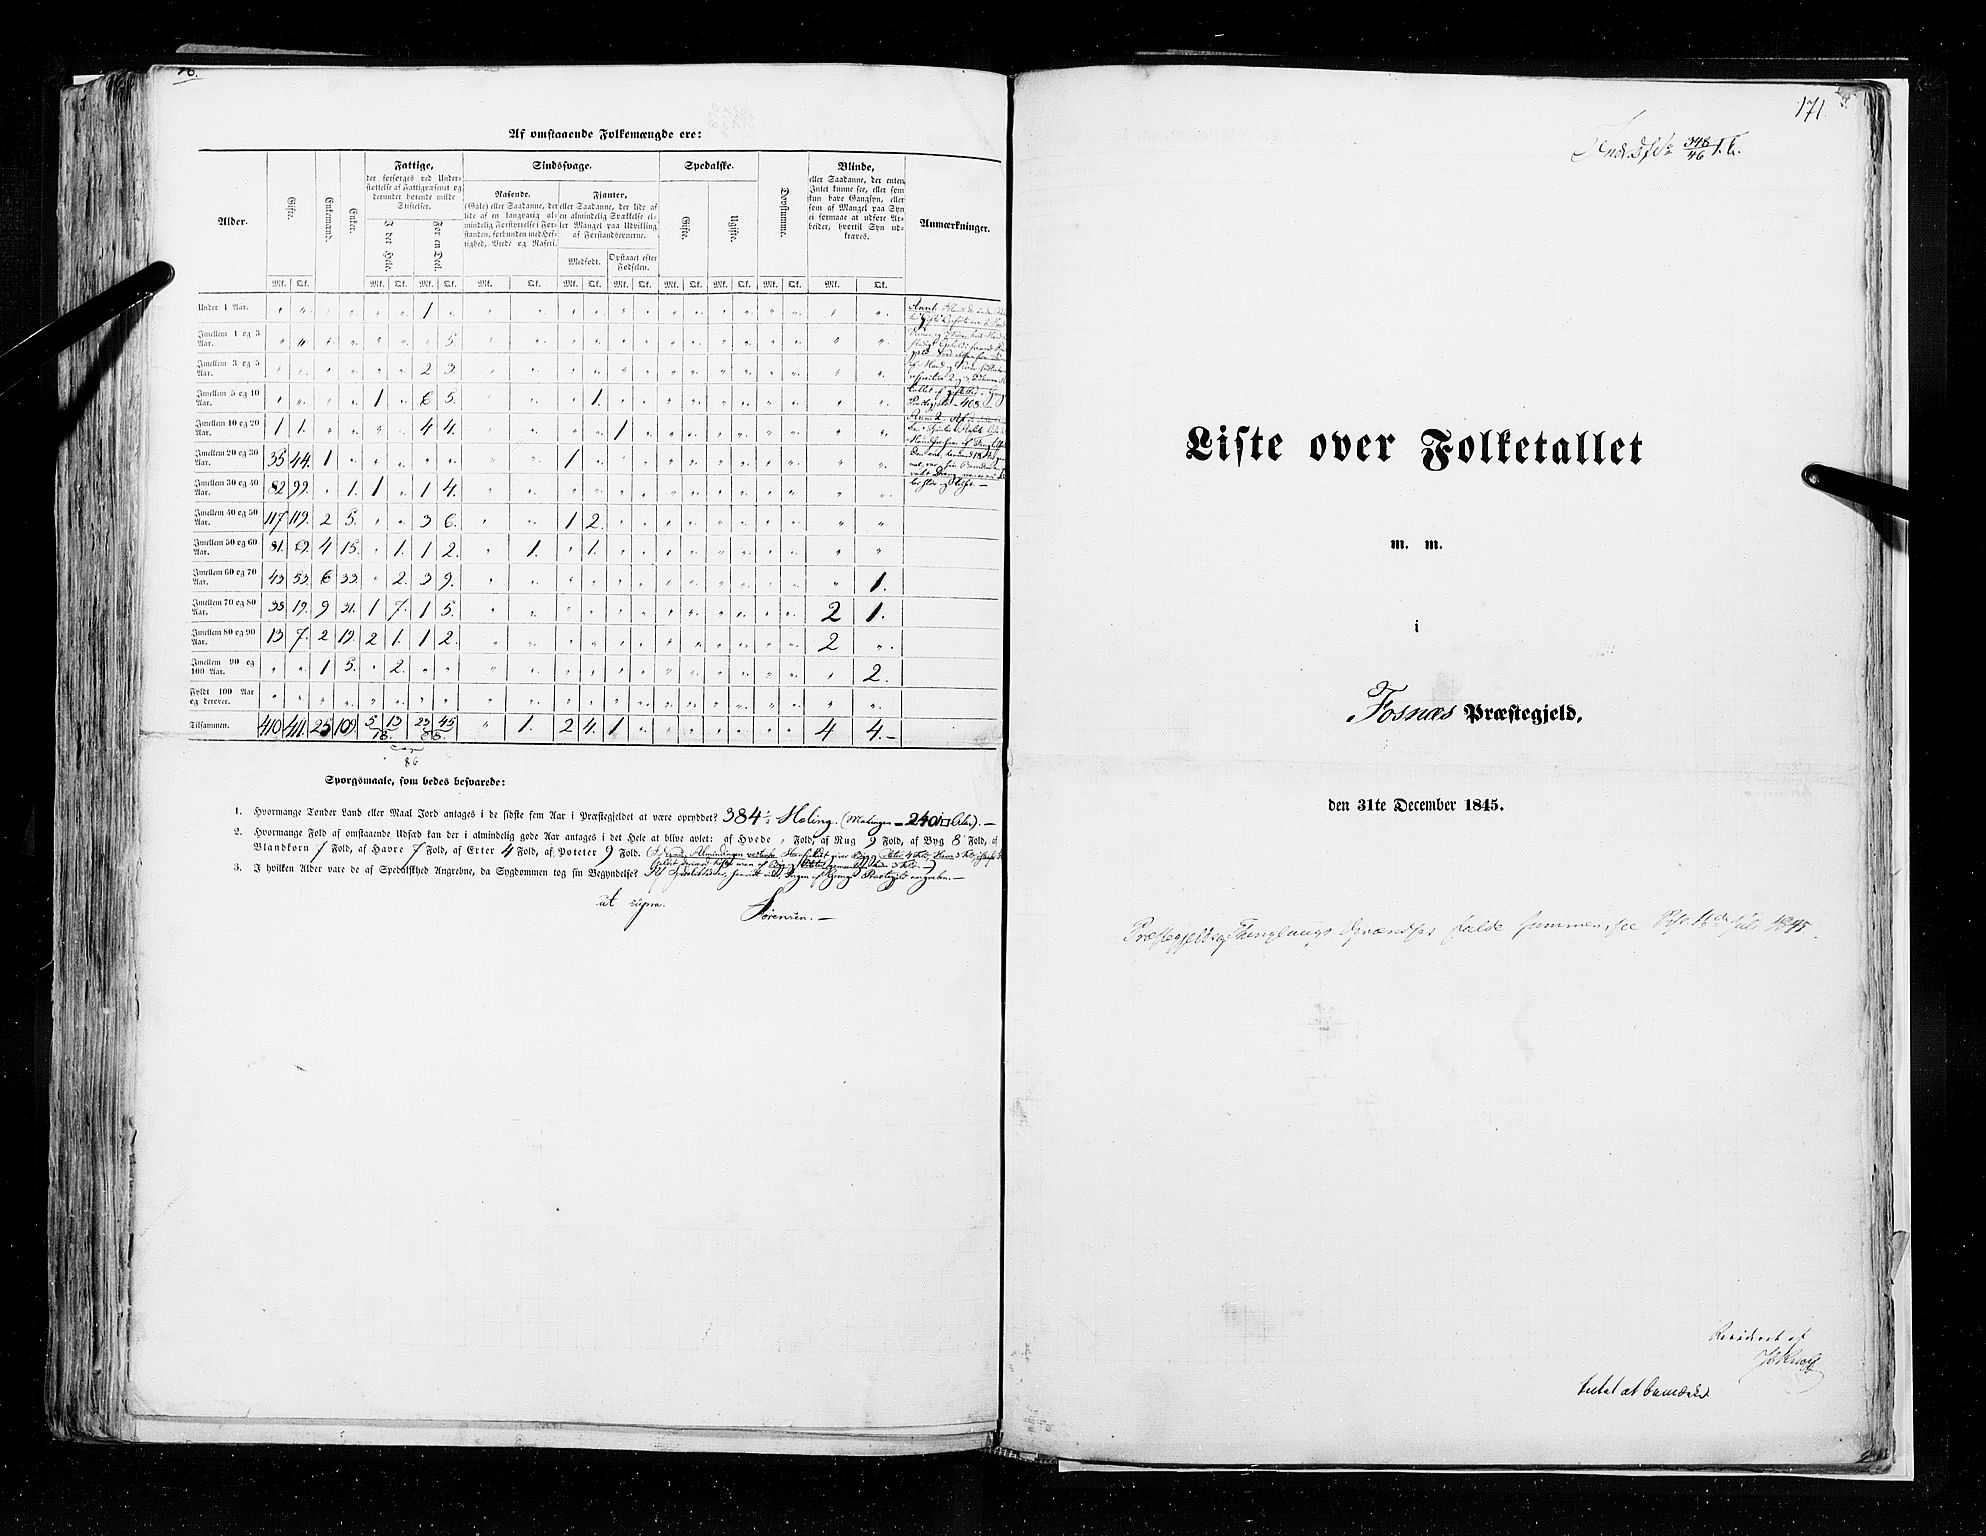 RA, Folketellingen 1845, bind 9A: Nordre Trondhjems amt, 1845, s. 171